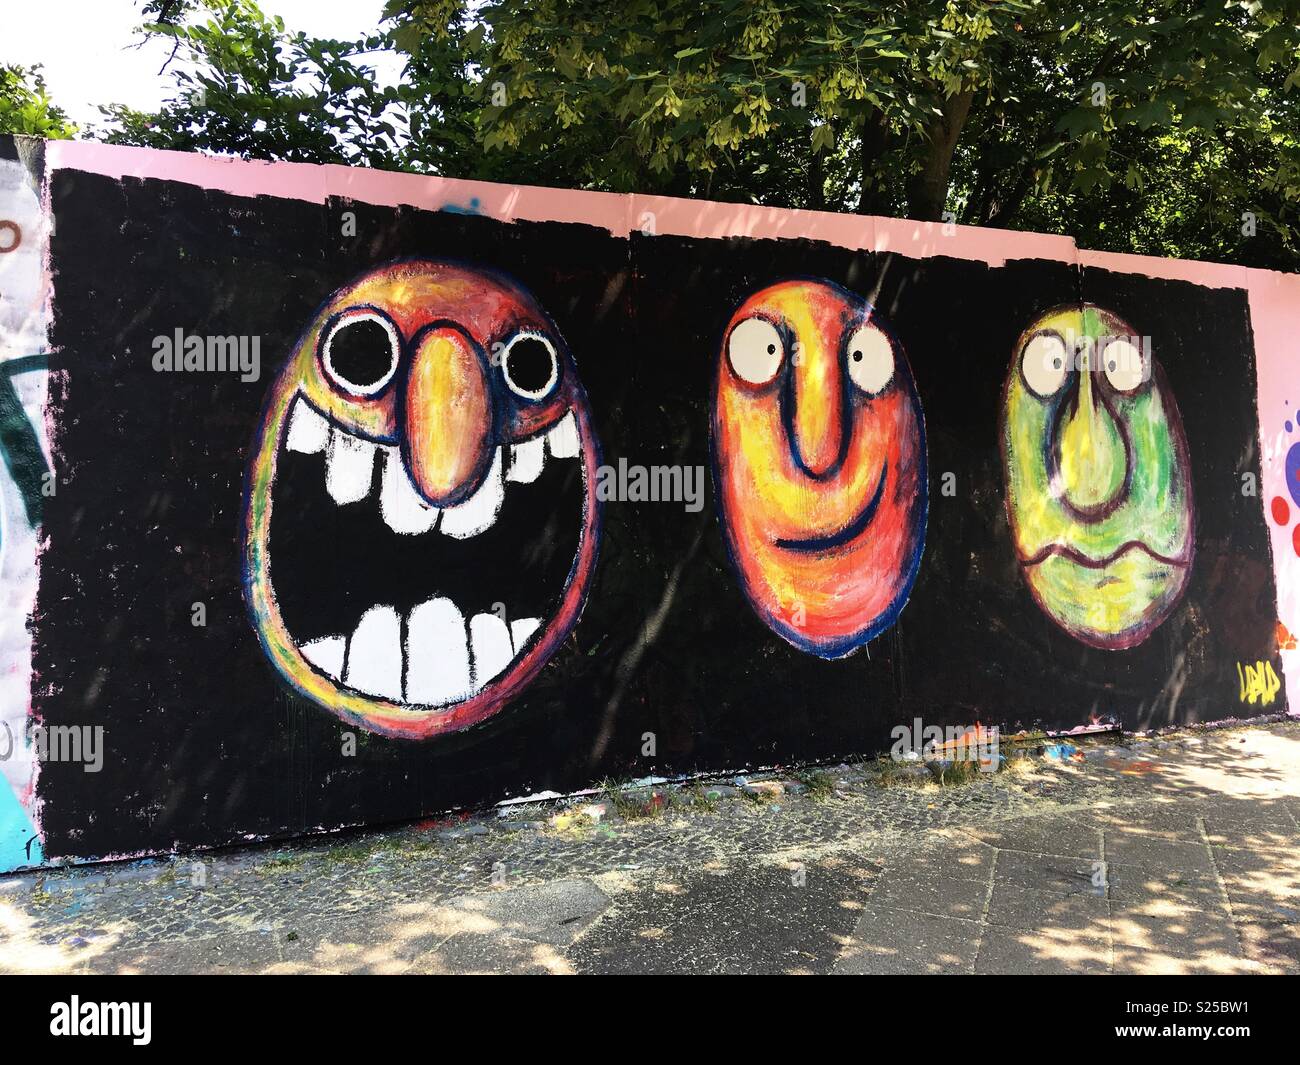 Graffiti de caras en diferentes estados de emociones Foto de stock